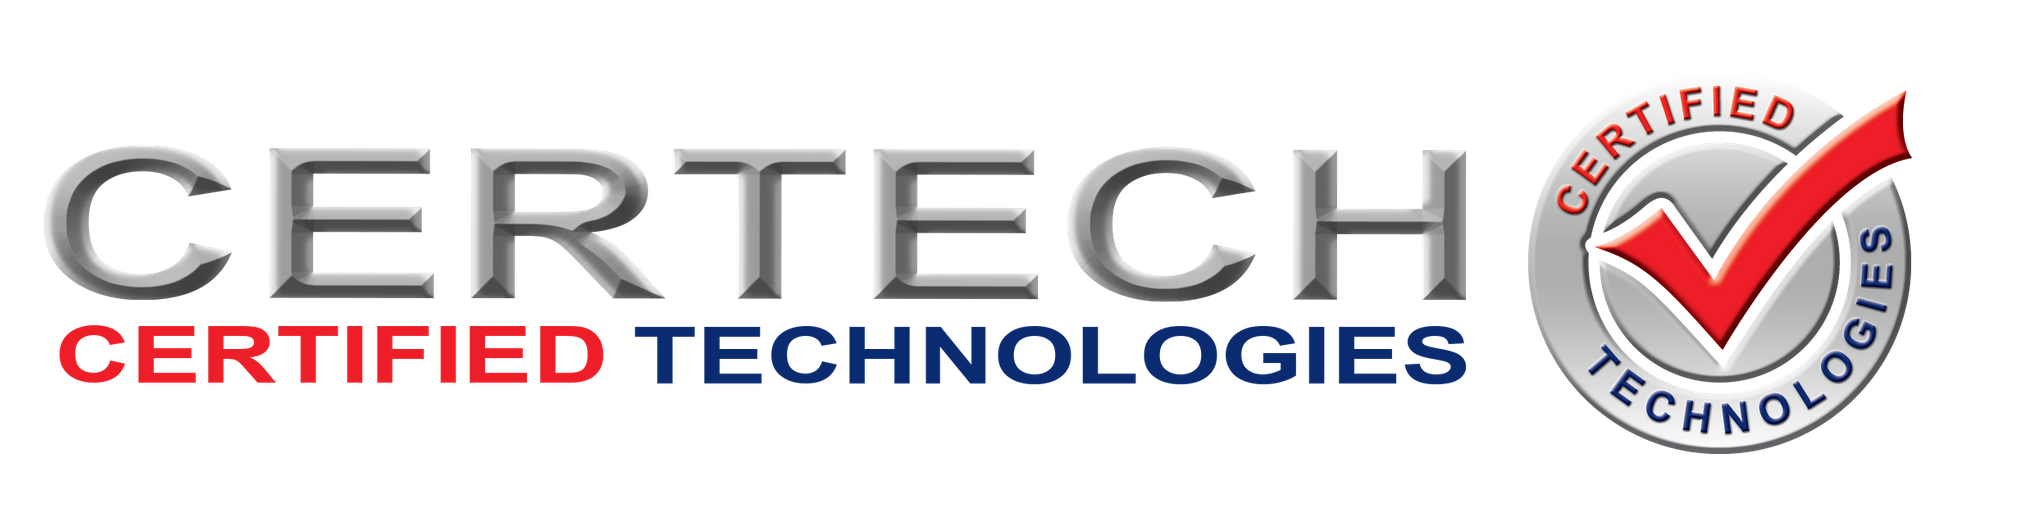 CERTECH - Certified Technologies